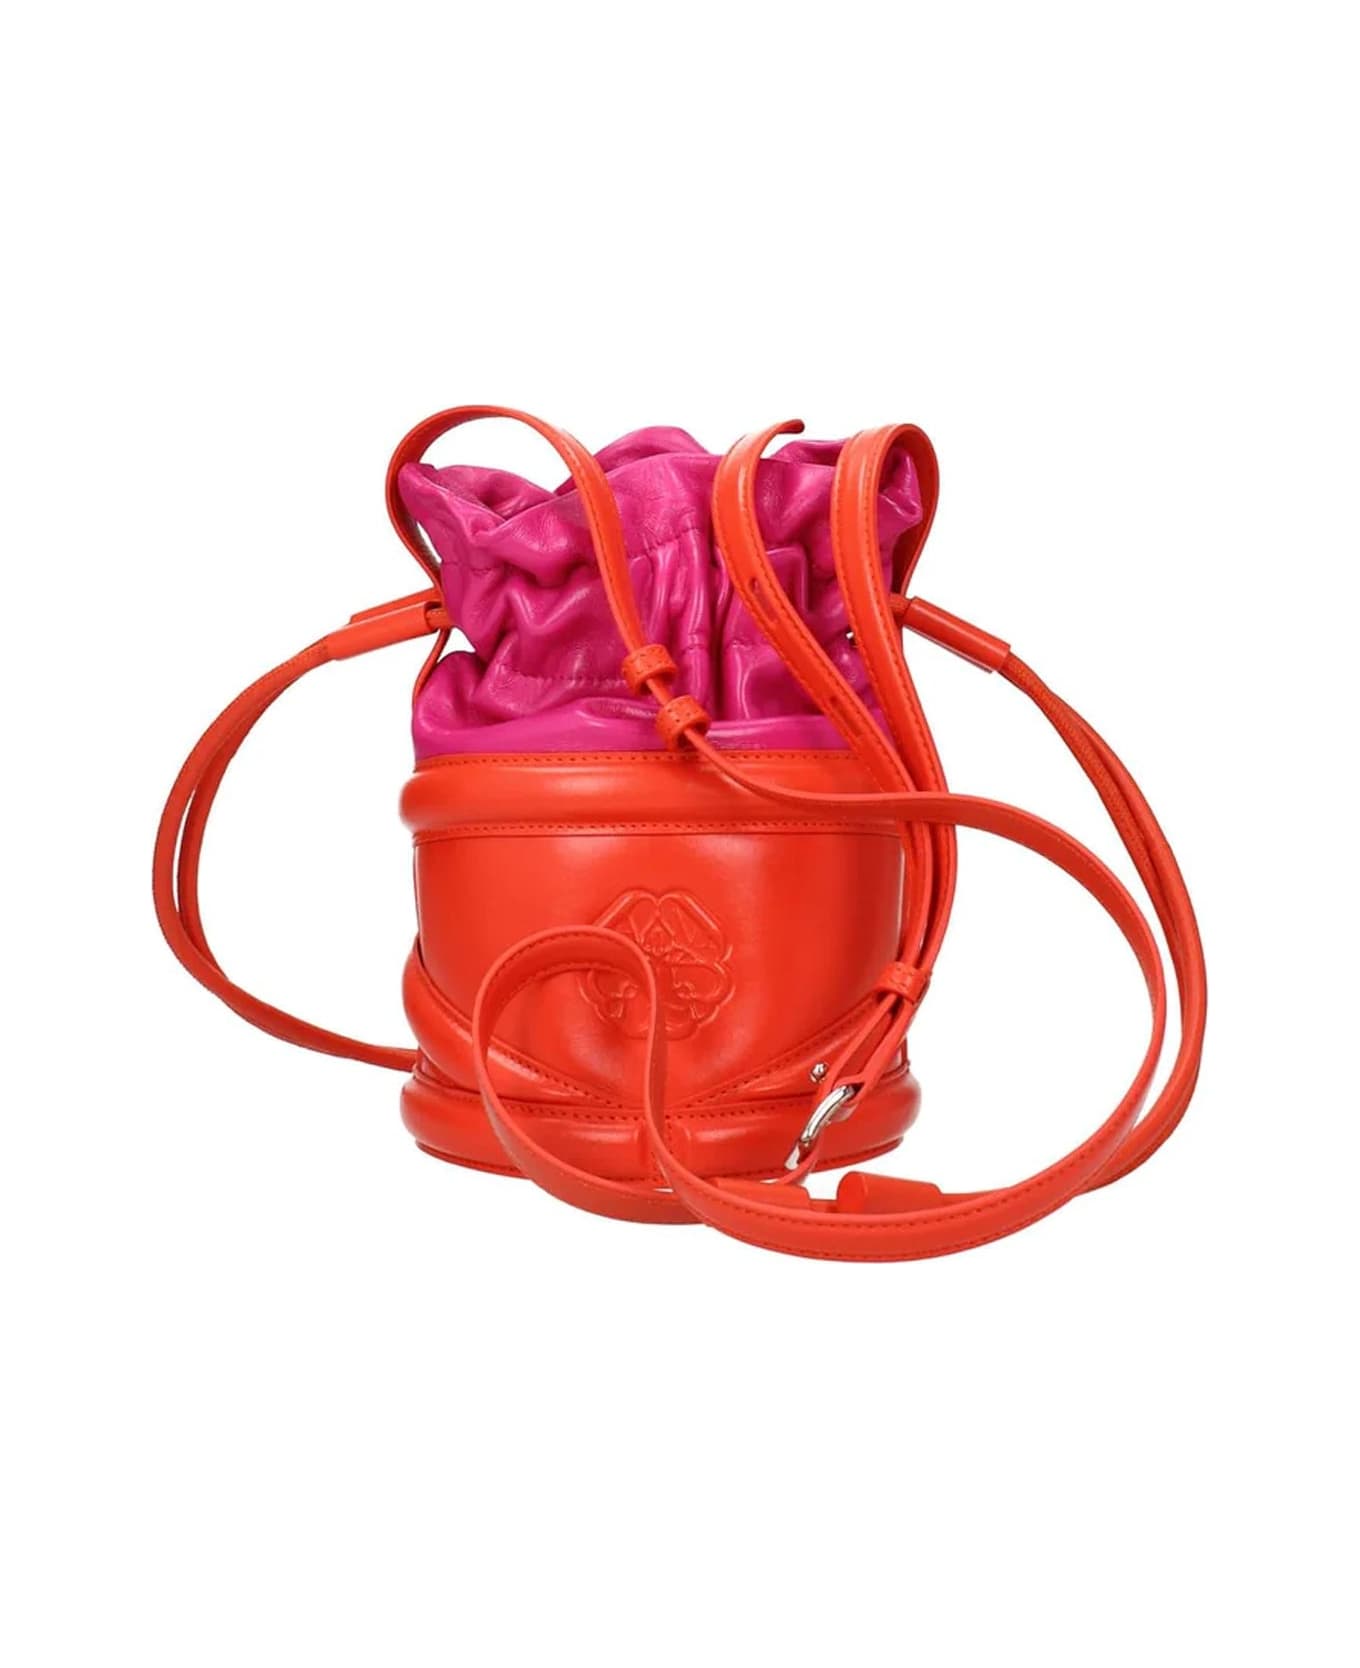 Alexander McQueen Curved Bucket Shoulder Bag - Pink トートバッグ